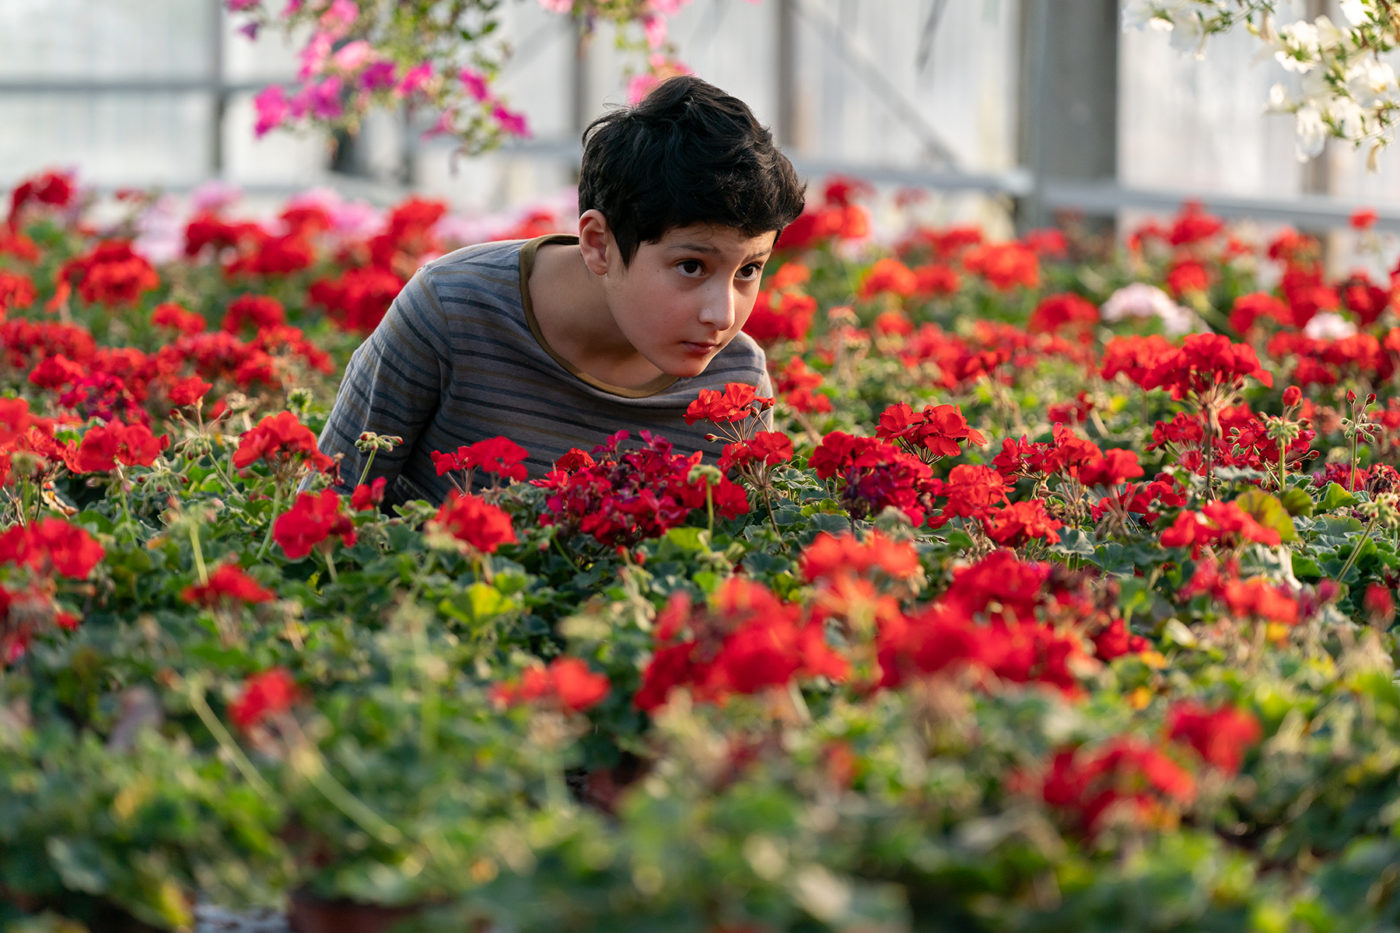 Poika katsoo kaukaisuuteen punaisten kukkien yli kumartuneena